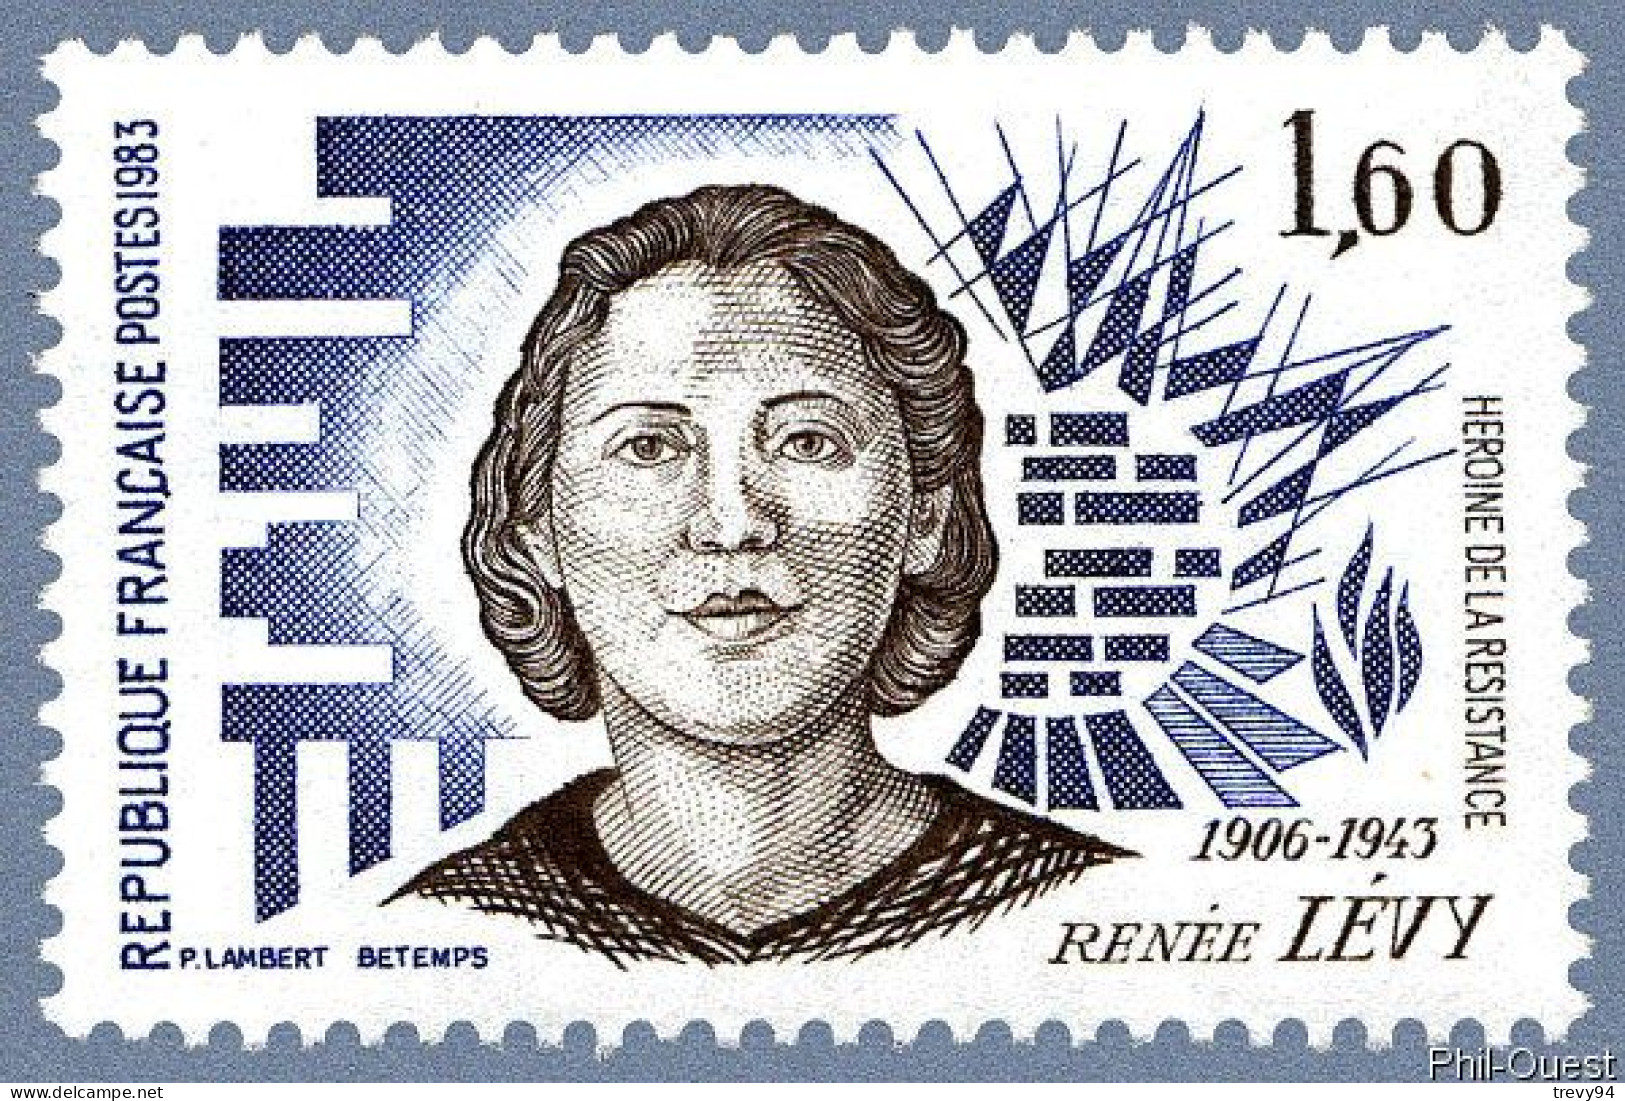 Timbre De 1983 - Héroïnes De La Résistance Renée Levy 1906-1943 - Yvert & Tellier N° 2293 - Unused Stamps